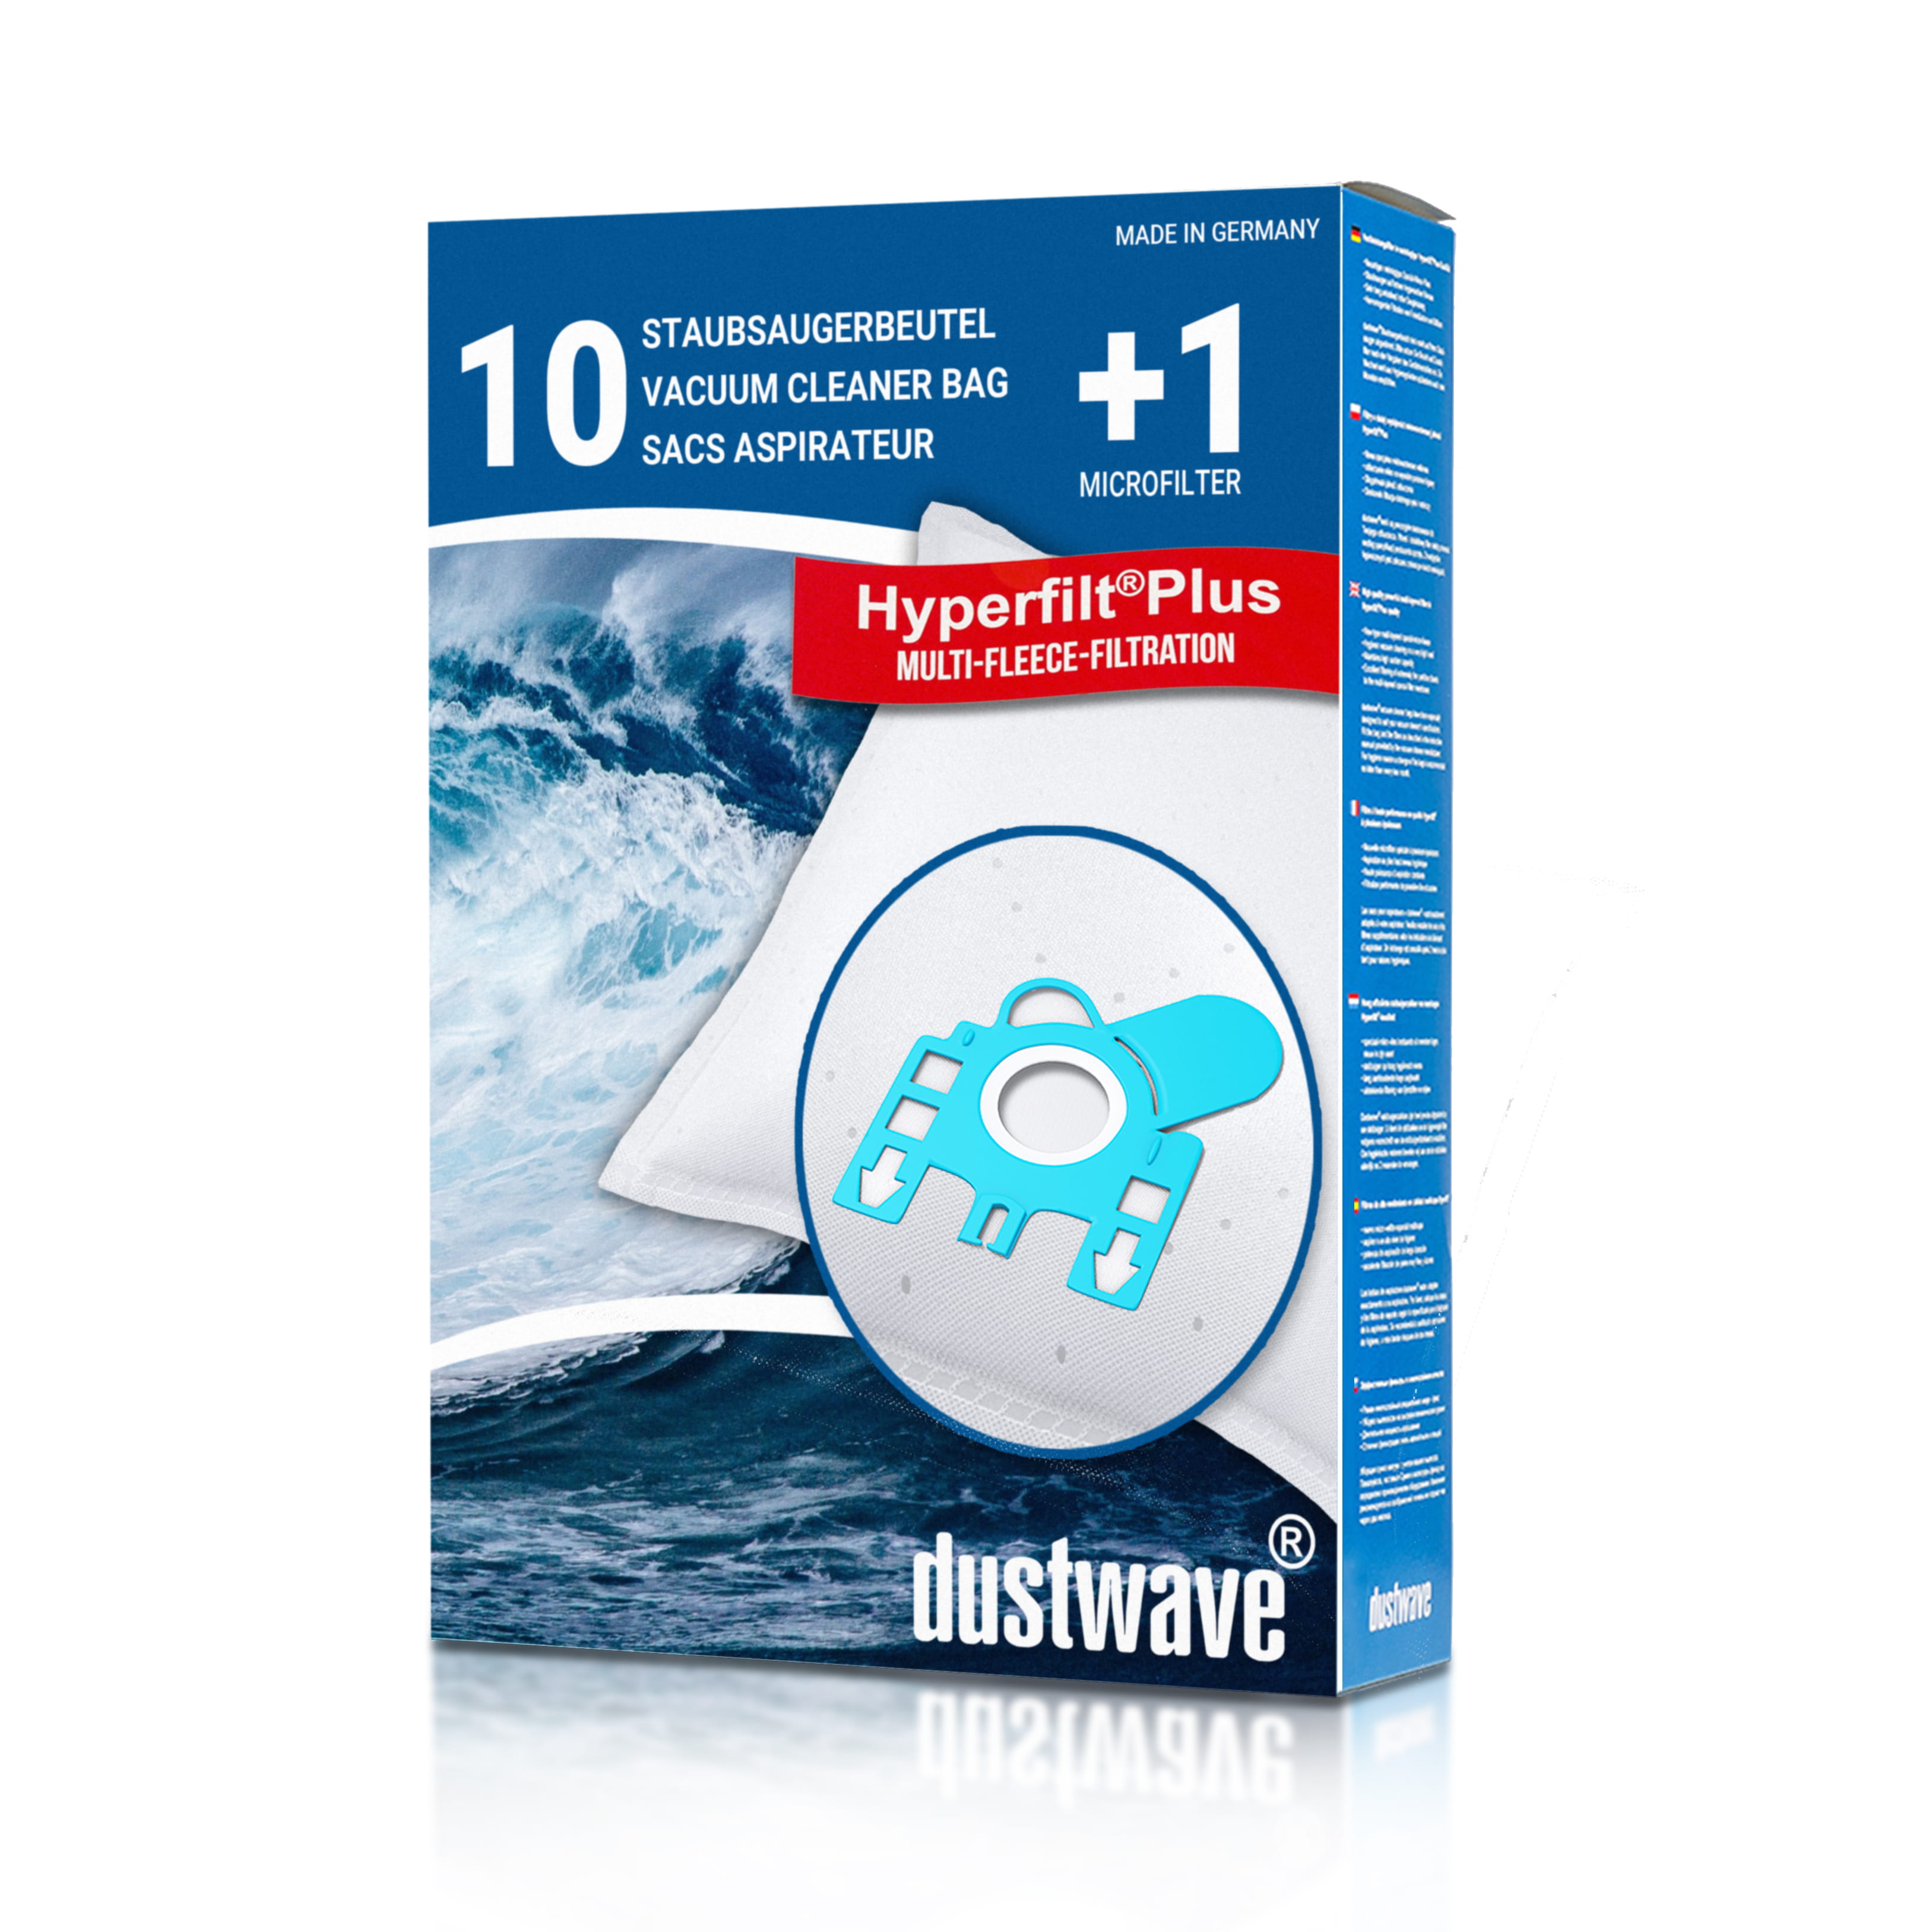 Dustwave® 10 Staubsaugerbeutel für Hoover PC12PAR - hocheffizient, mehrlagiges Mikrovlies mit Hygieneverschluss - Made in Germany